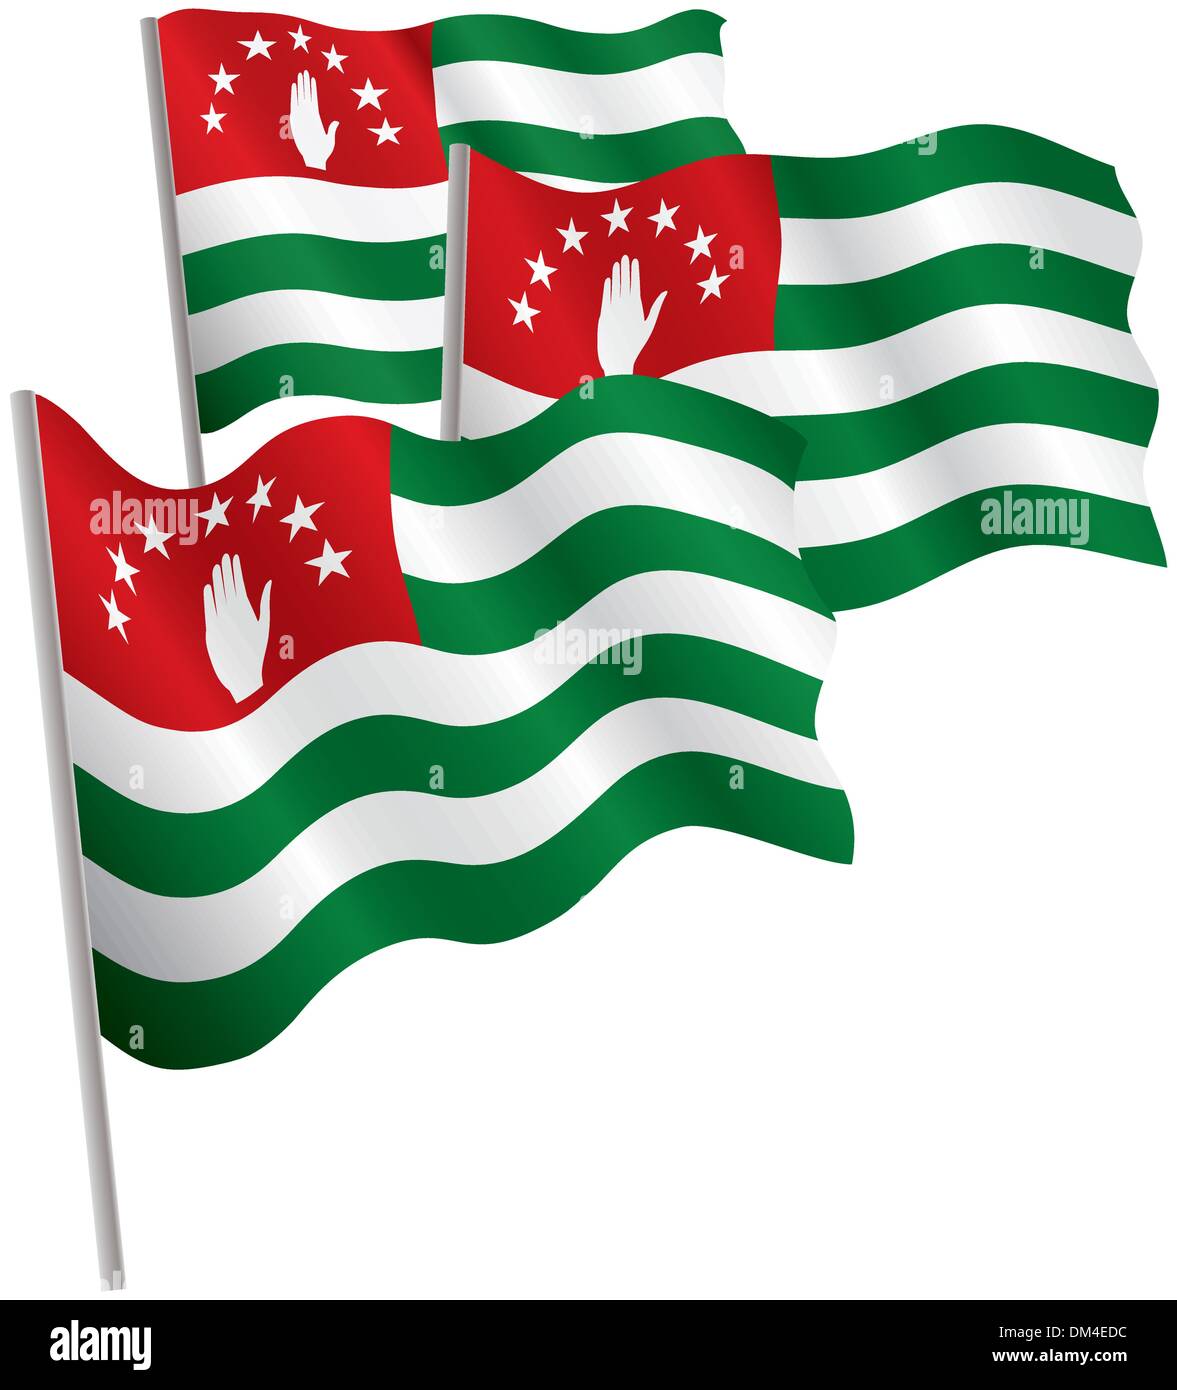 Republic of Abkhazia 3d flag. Stock Vector